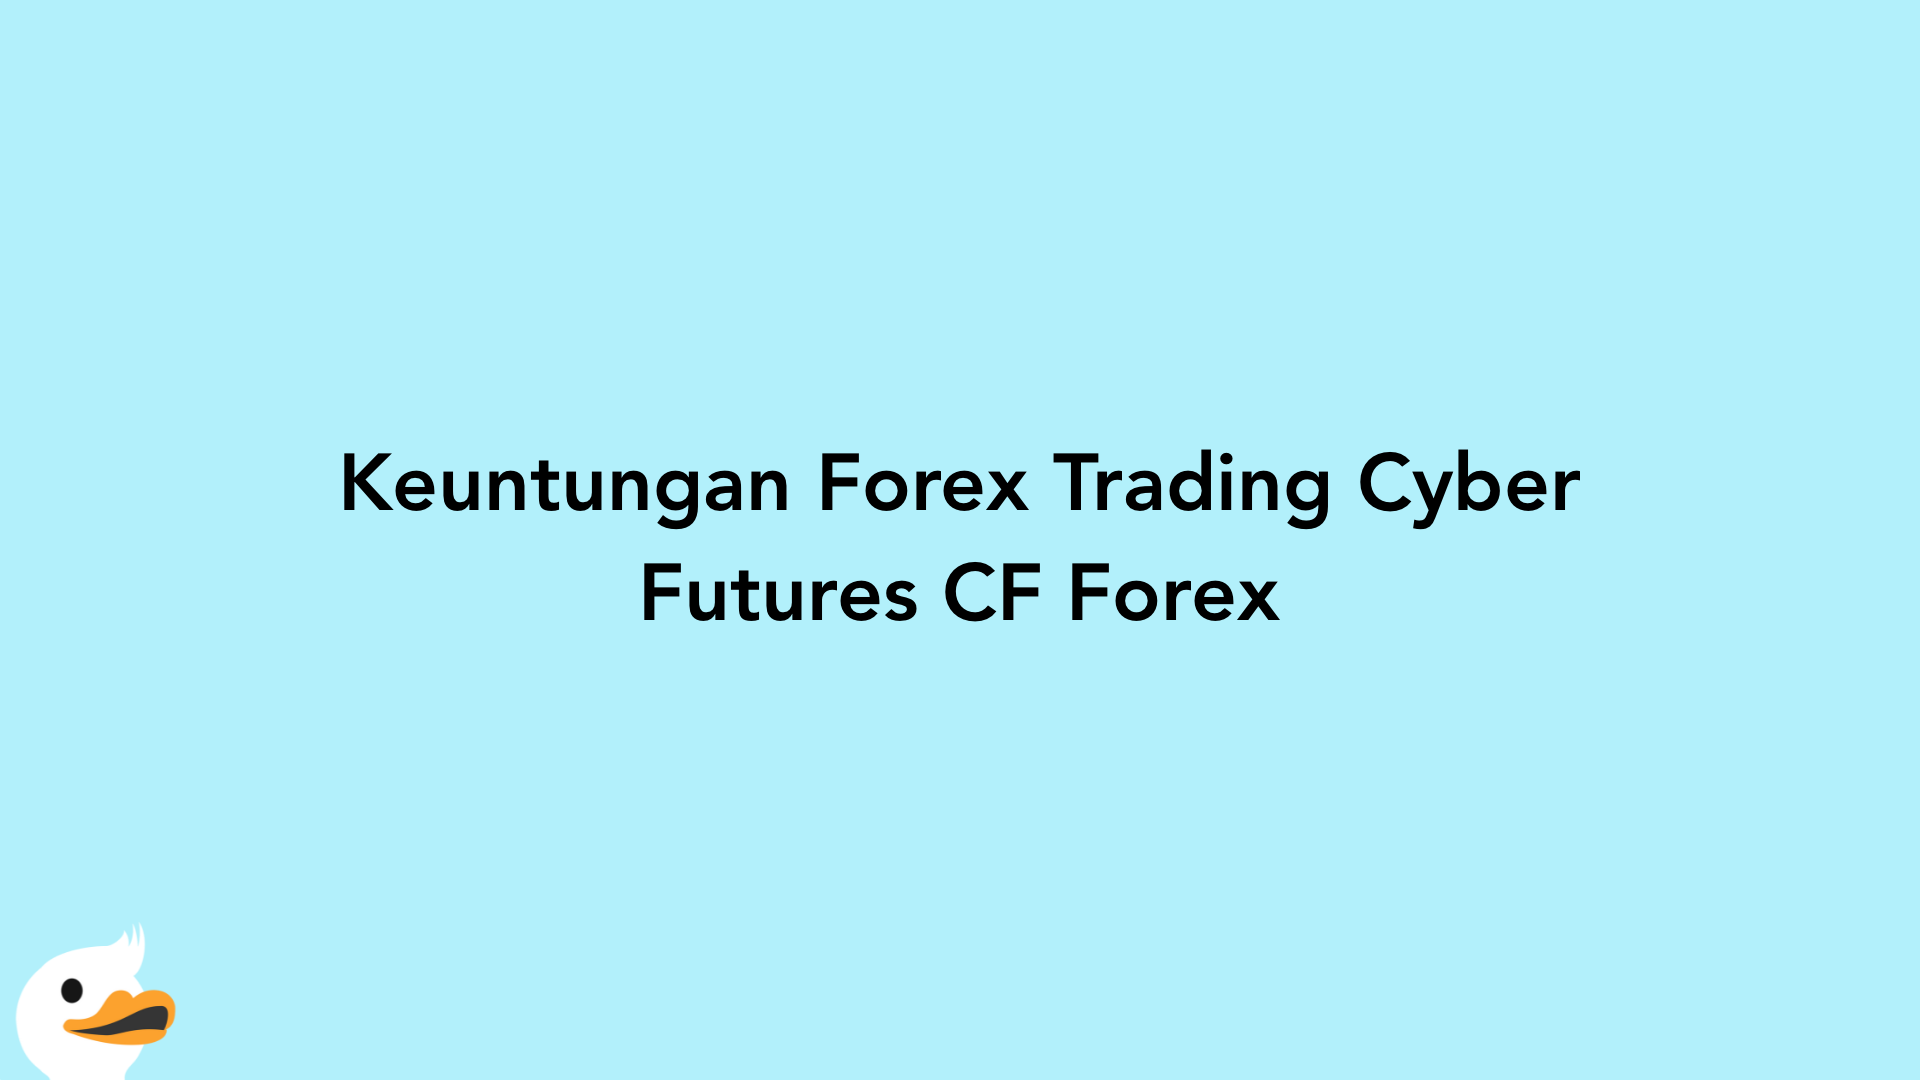 Keuntungan Forex Trading Cyber Futures CF Forex